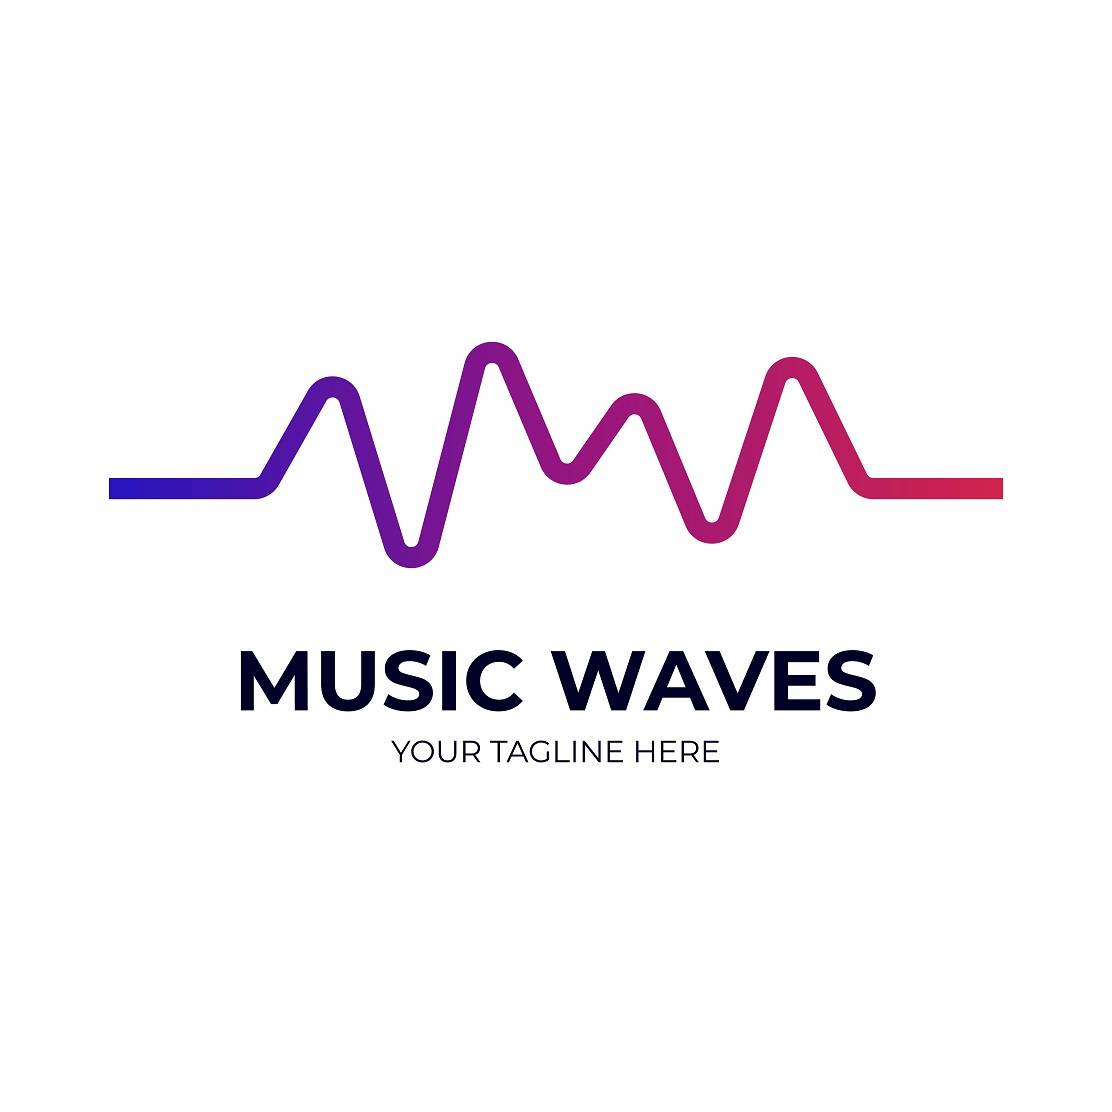 Music waves logo